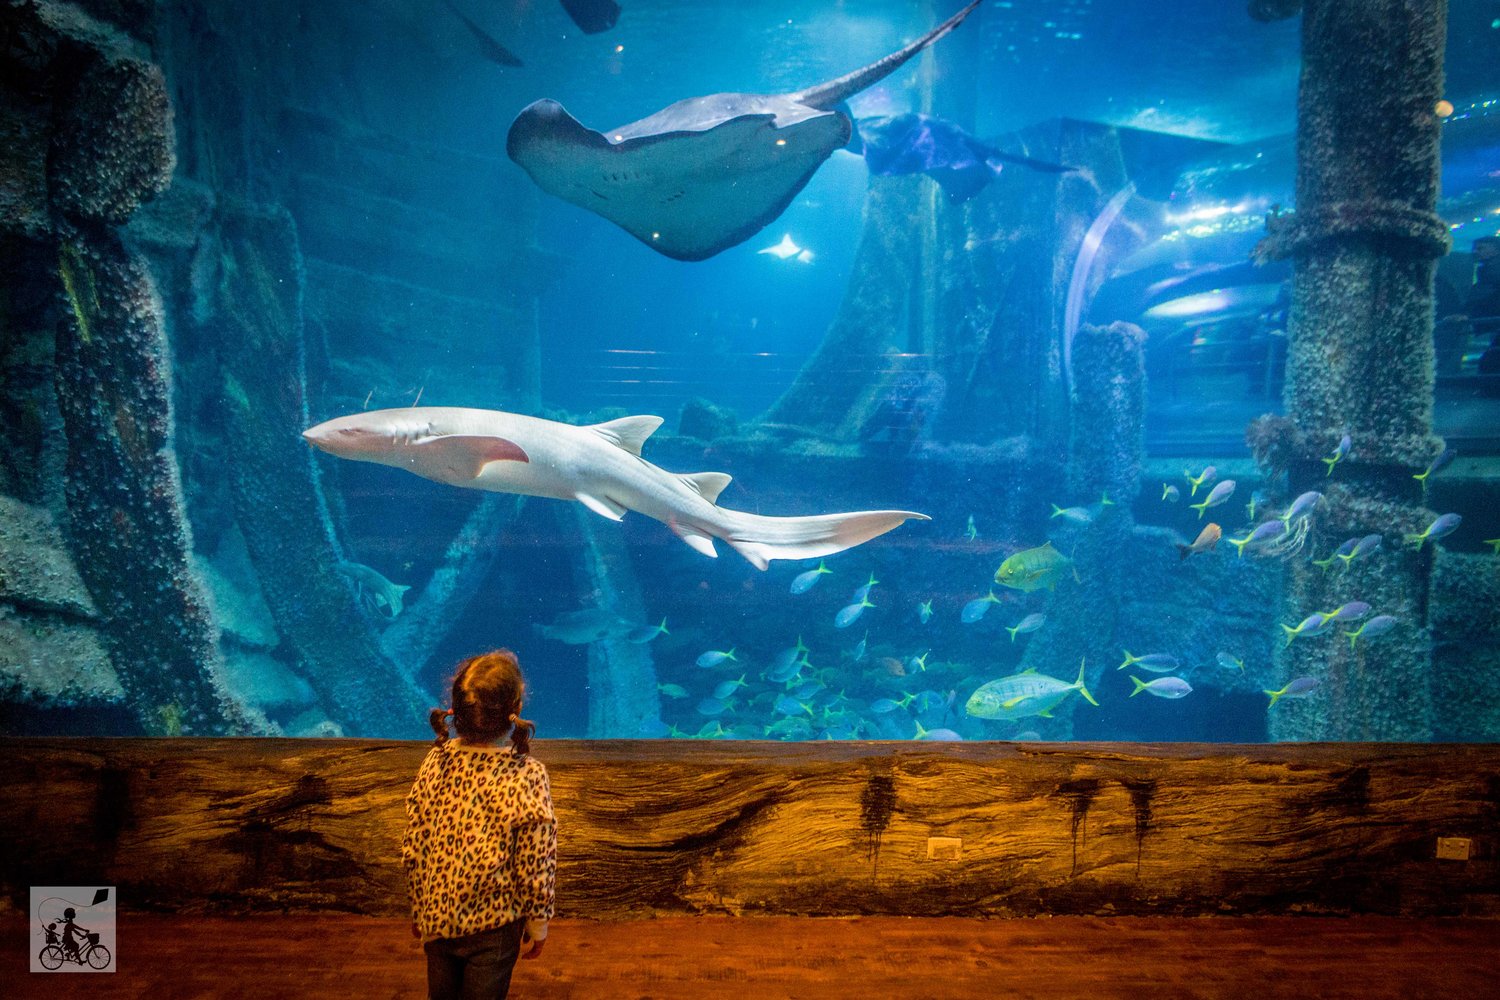 sealife aquarium, melbourne — mamma knows melbourne